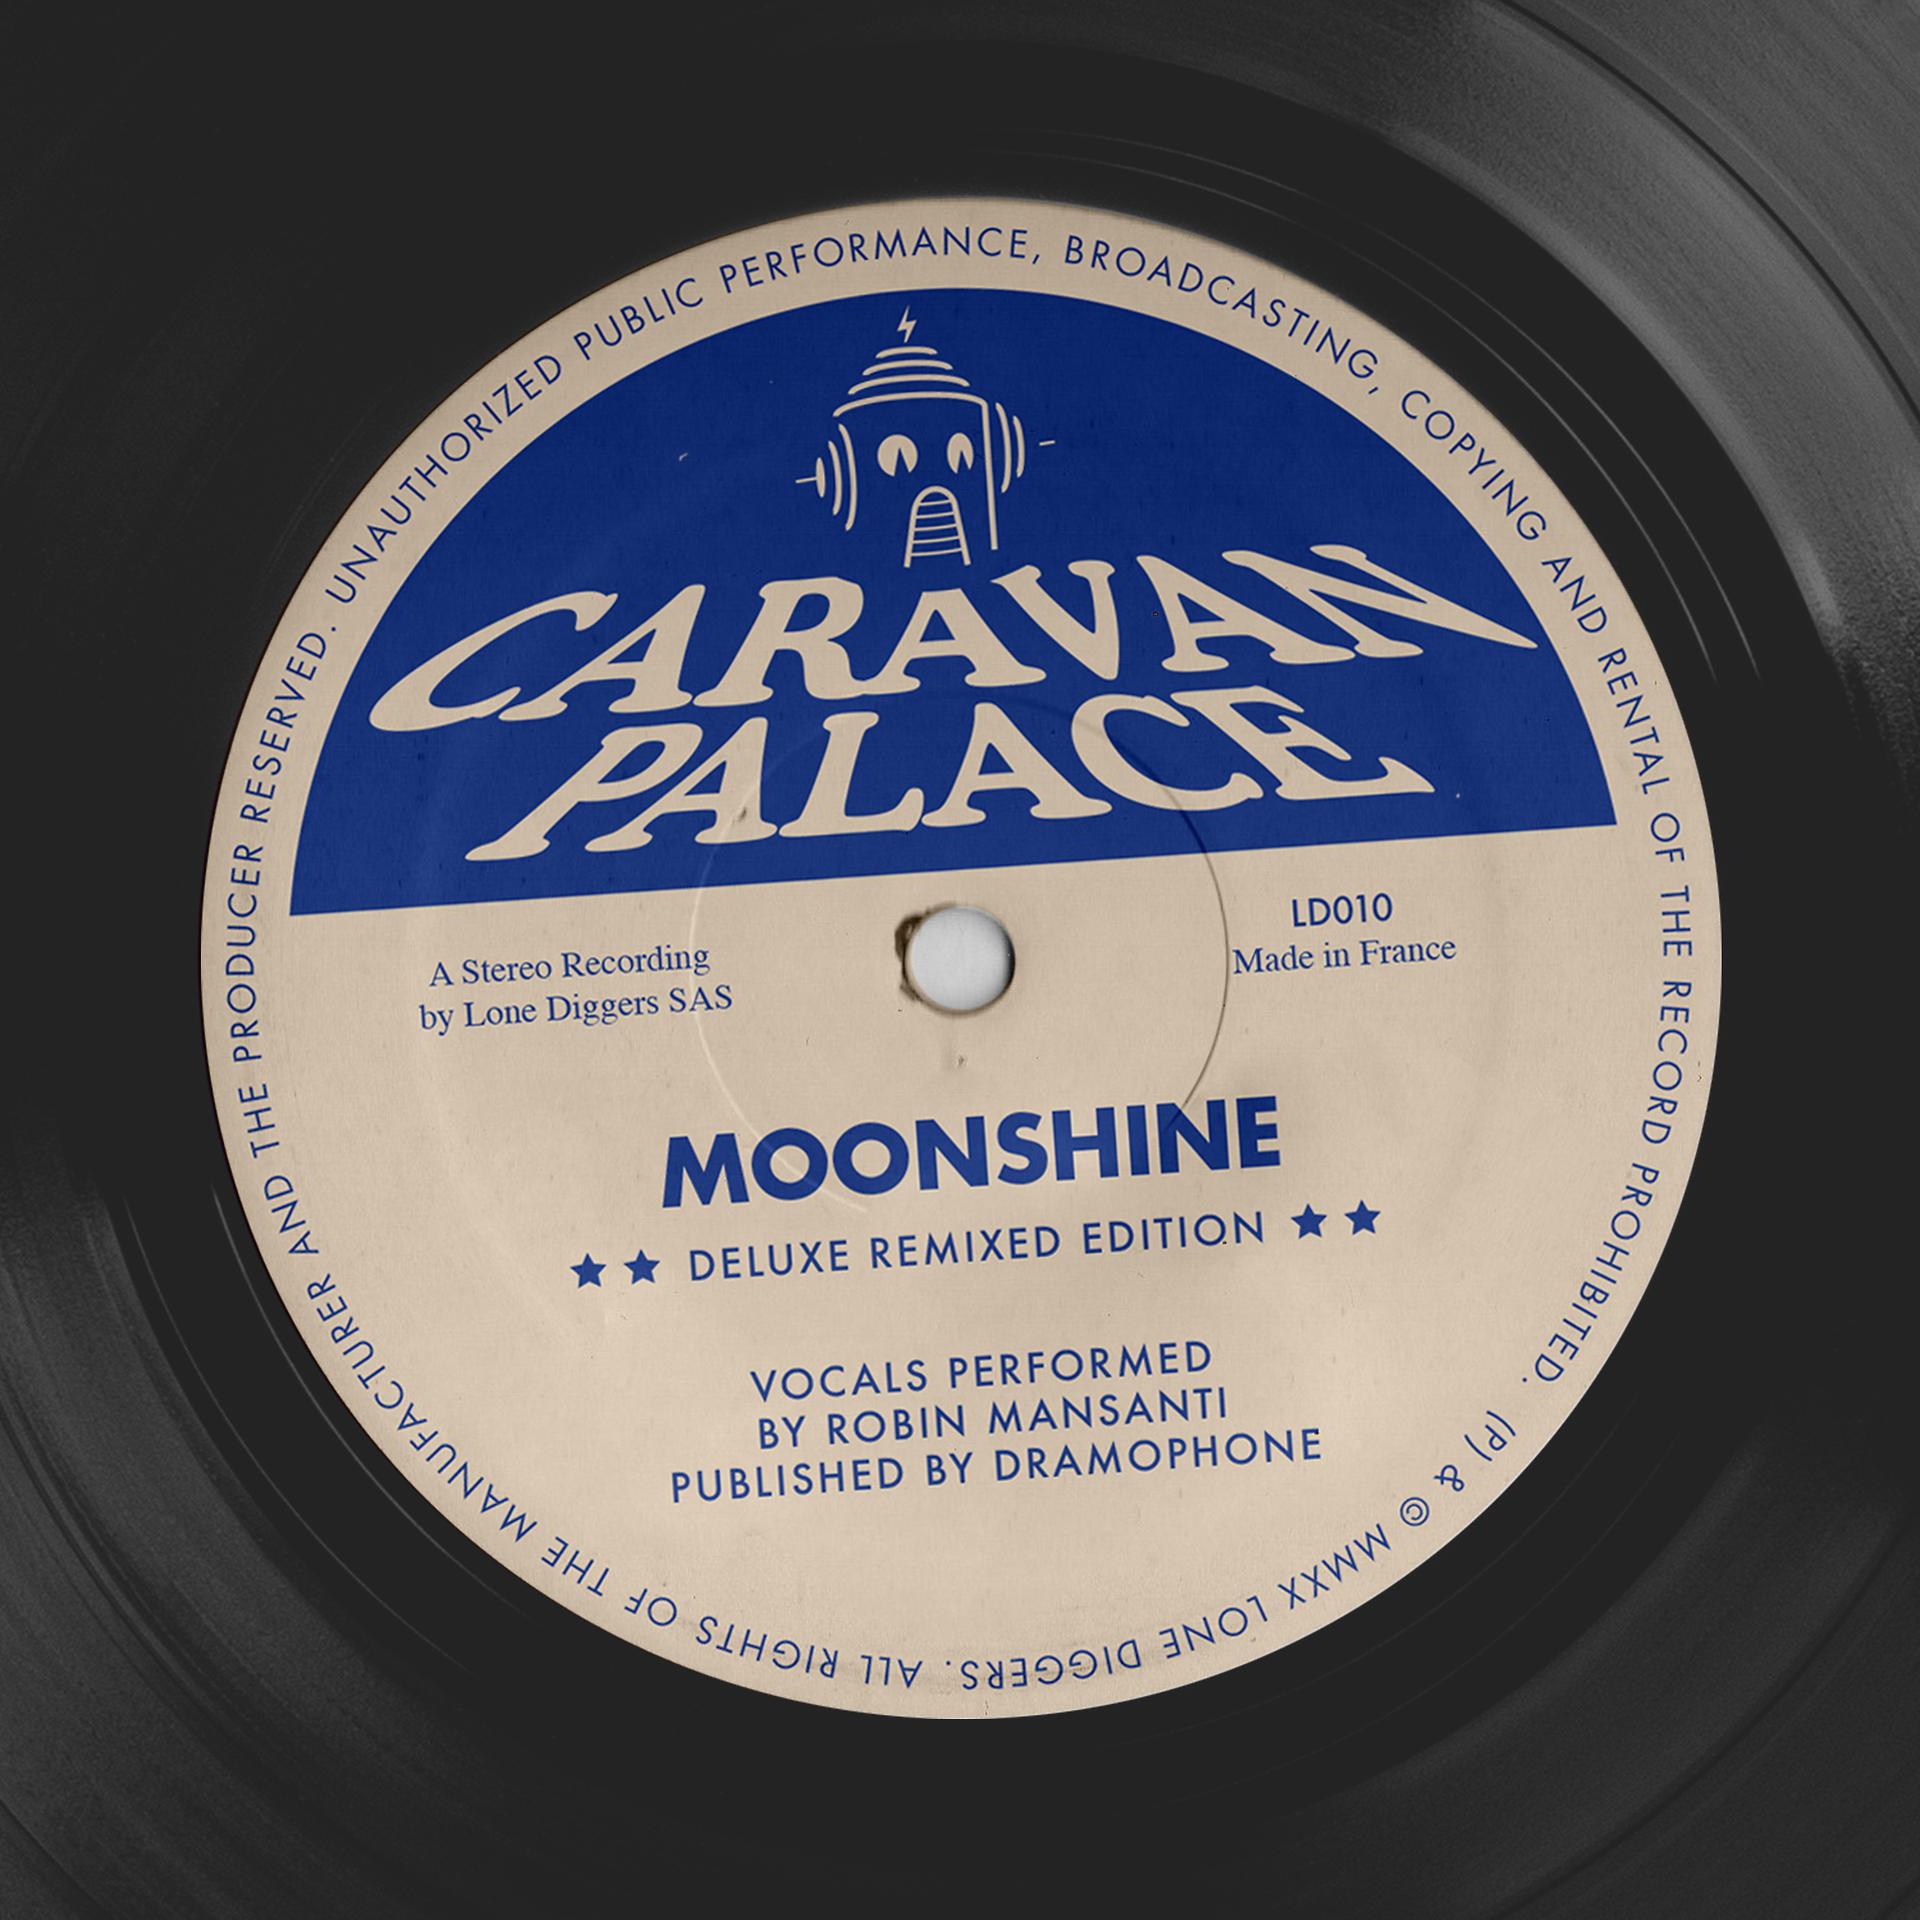 Караван remix. Caravan Palace moonshine. Караван Палас группа. Caravan Palace album. Караван Палас альбомы.